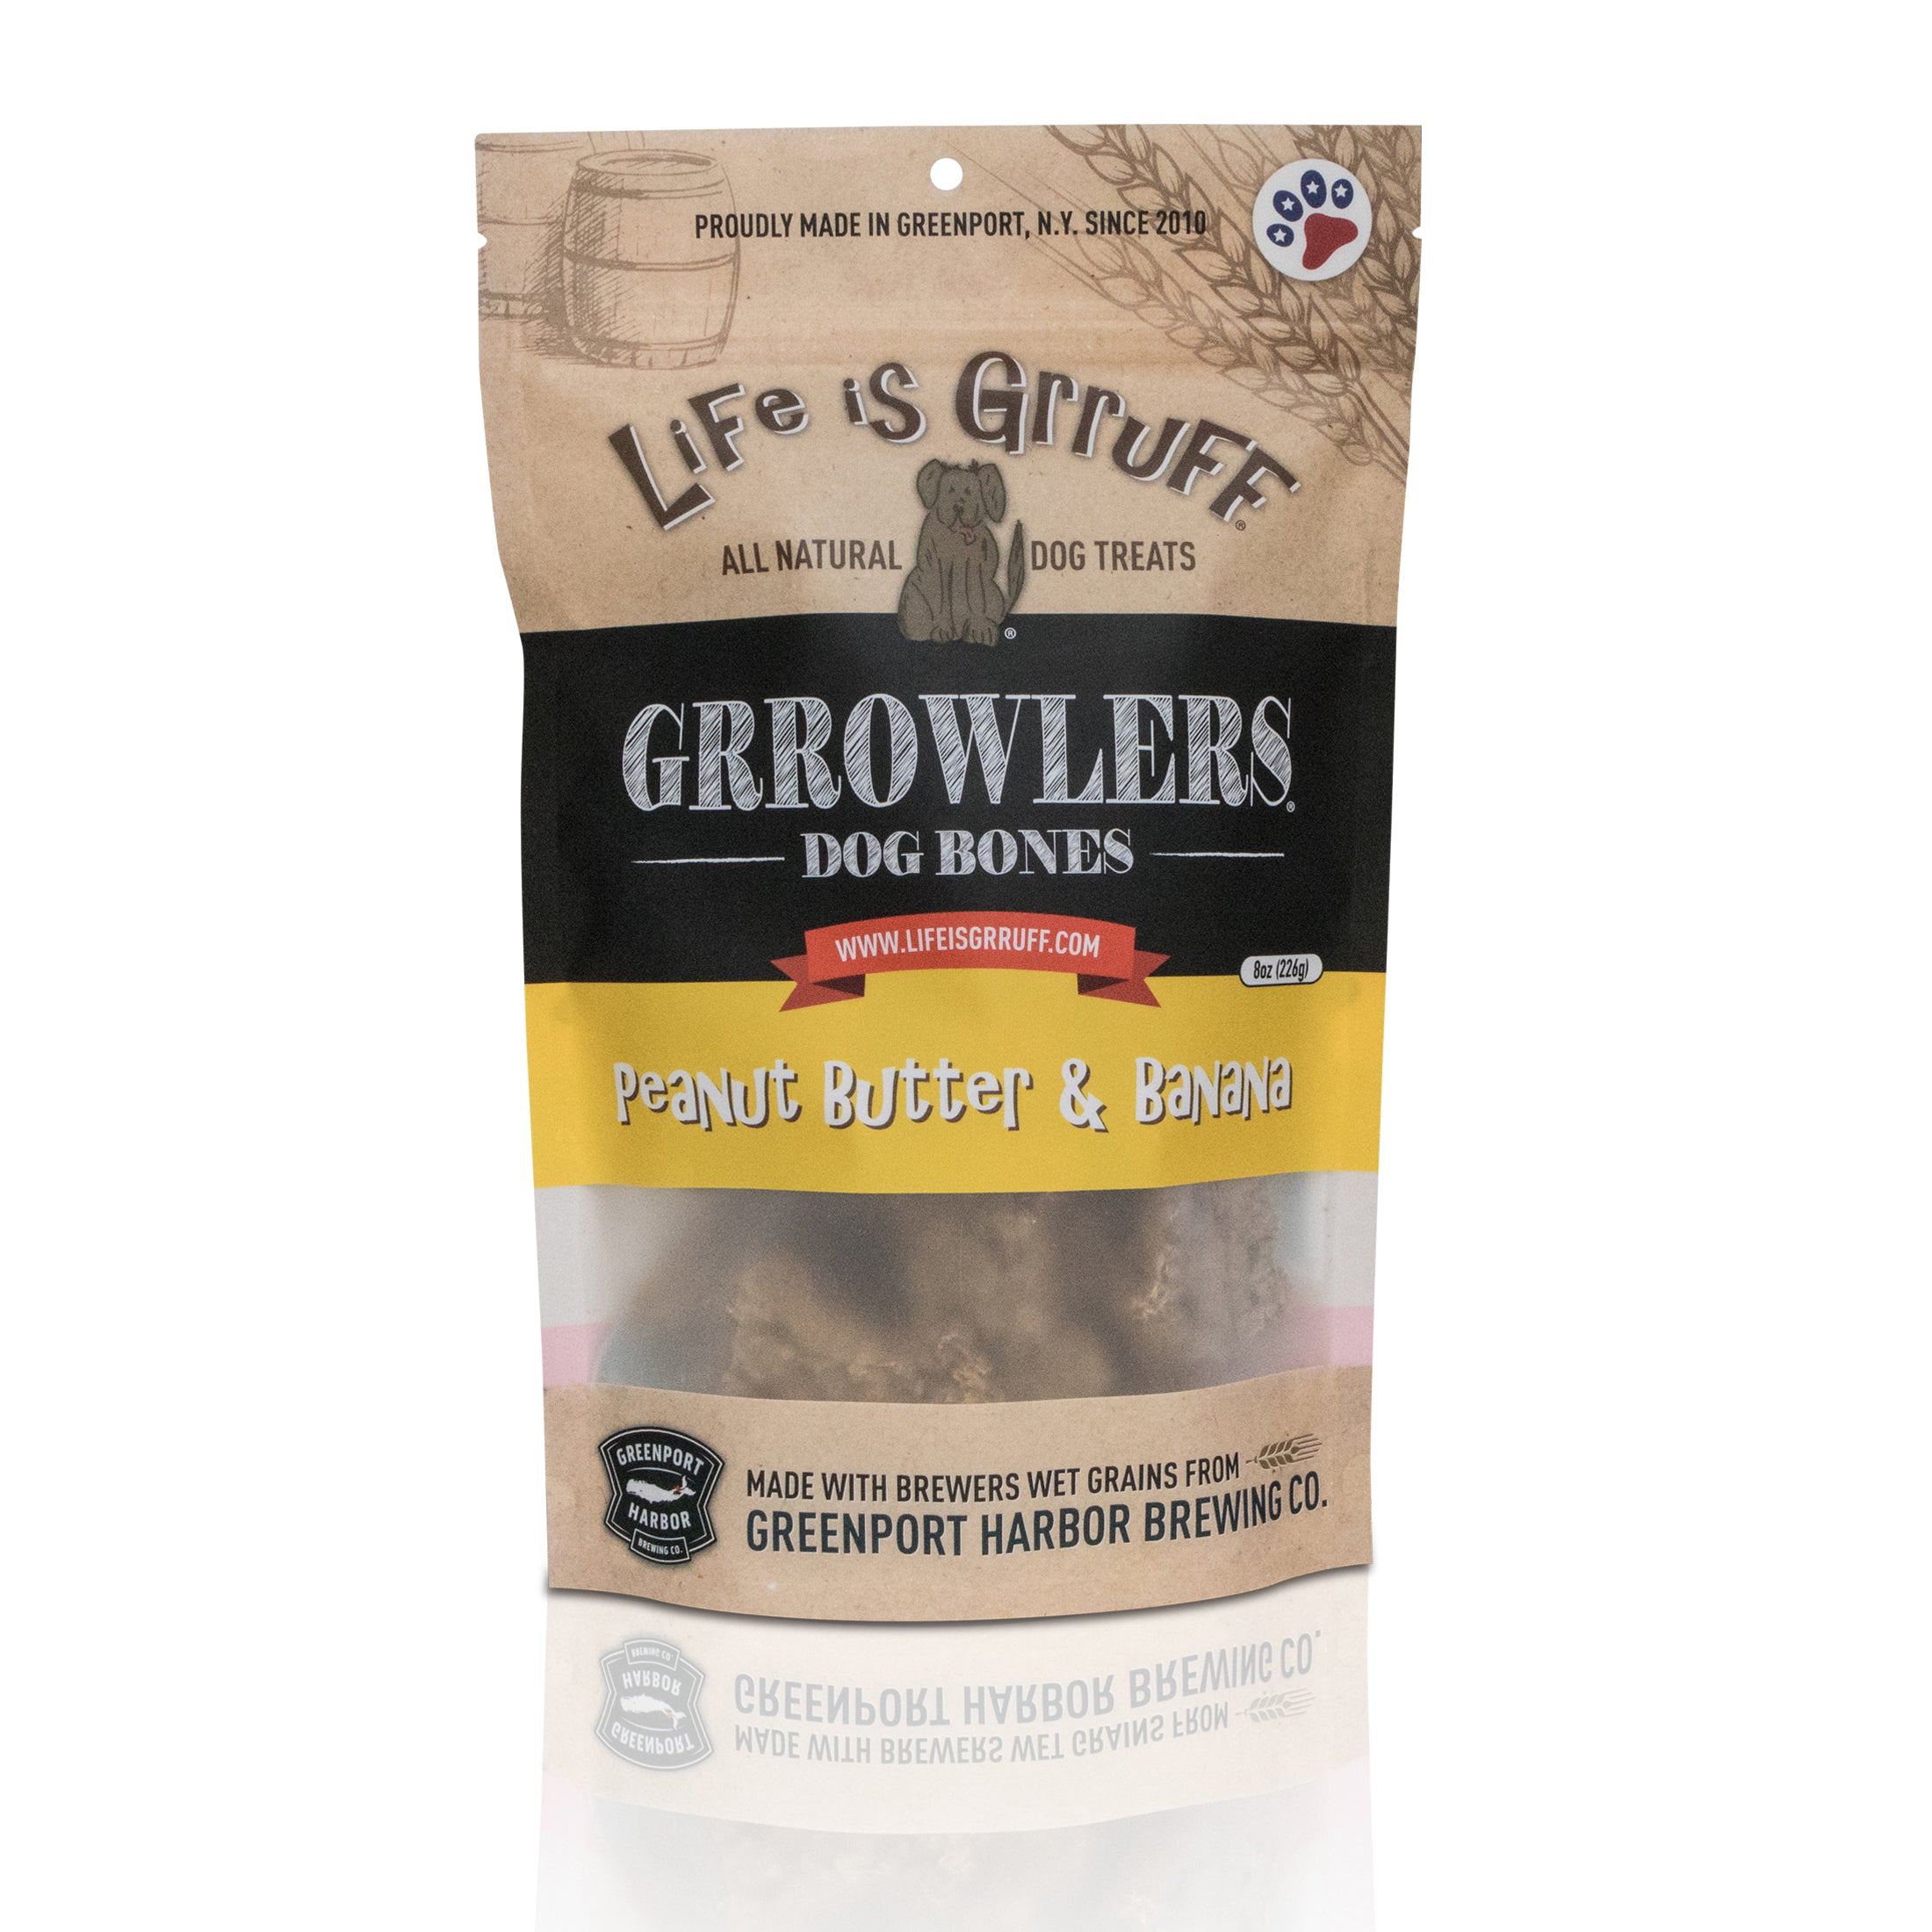 Grrowler's Dog Bones: Peanut Butter & Banana